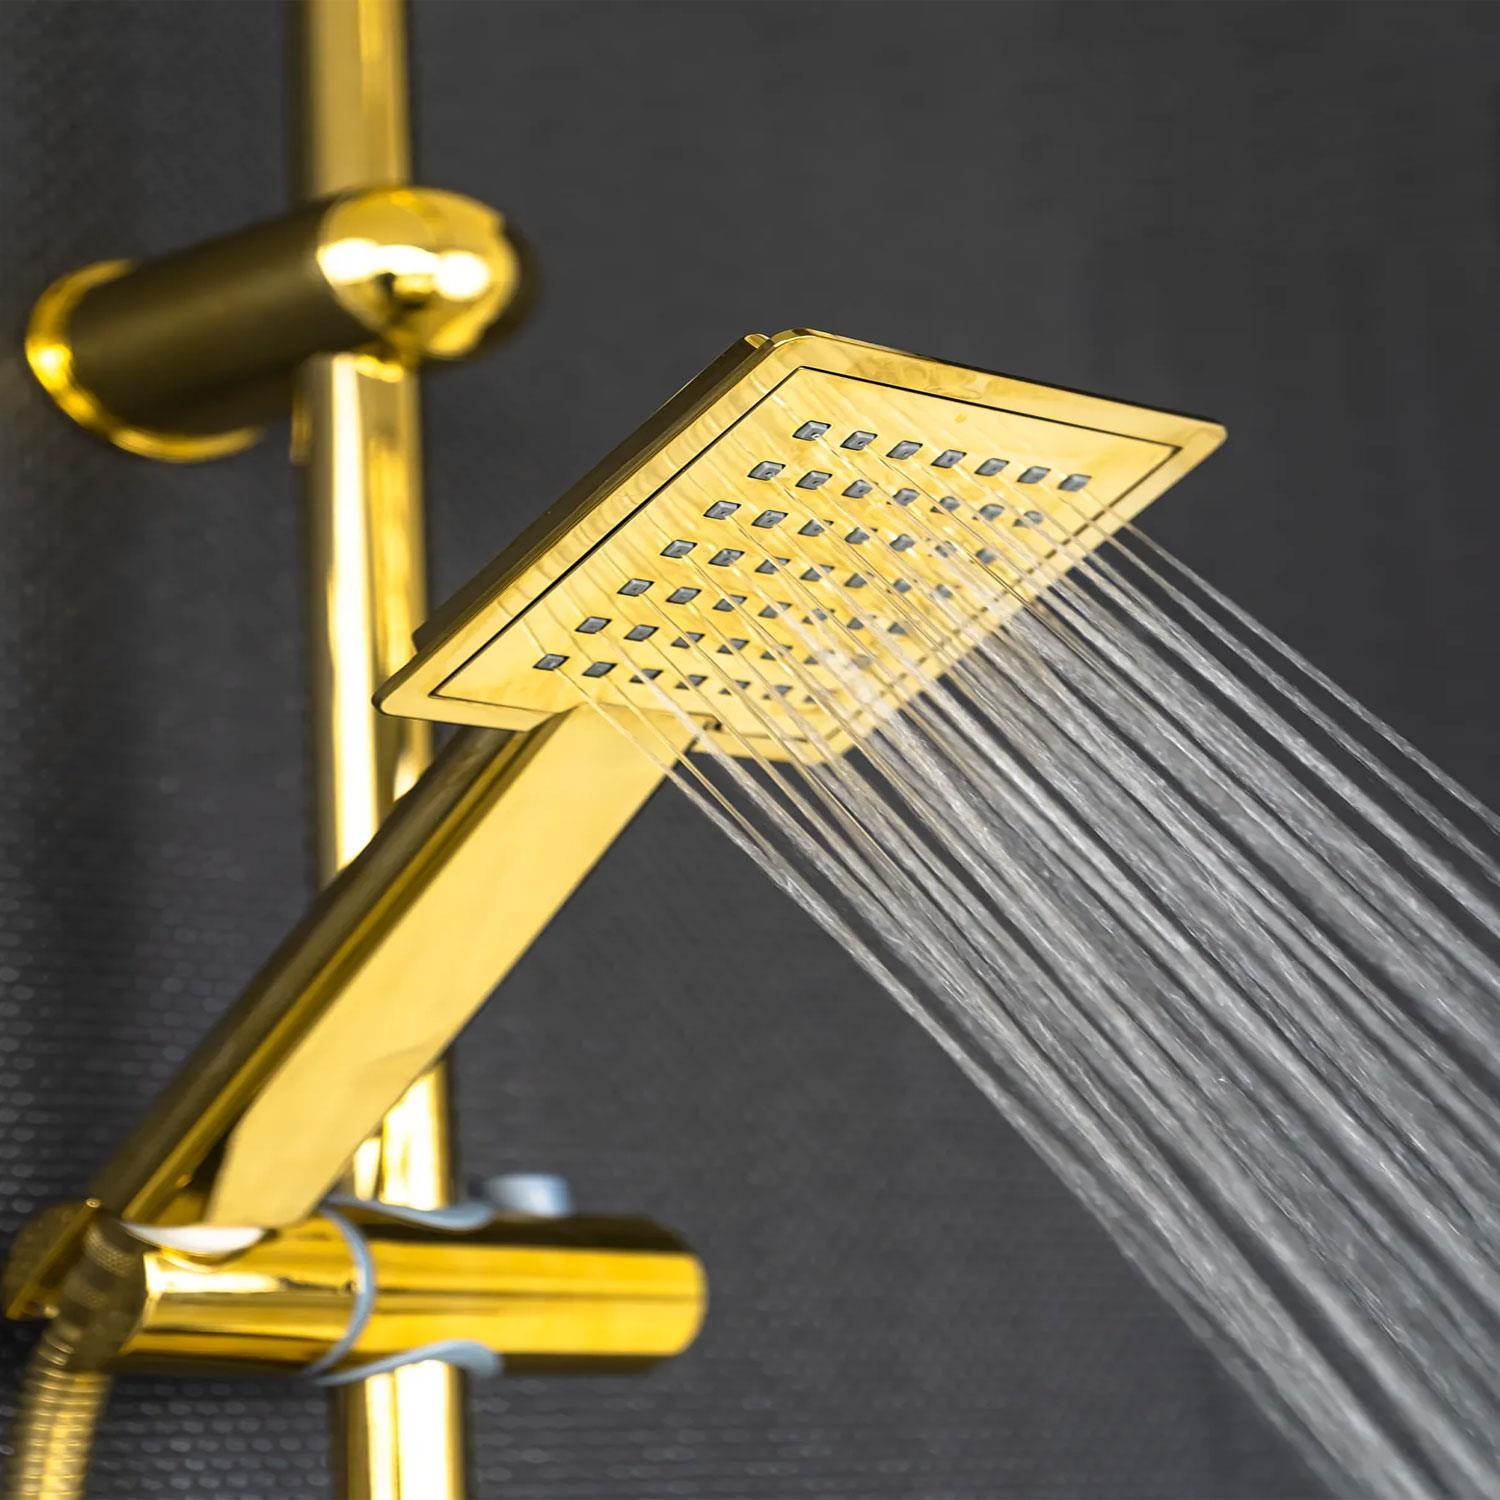 Robot Tepe Duş Seti Takımı Shower Yağmurlama Kare Banyo Masaj Duş Başlığı Sistemi Gold